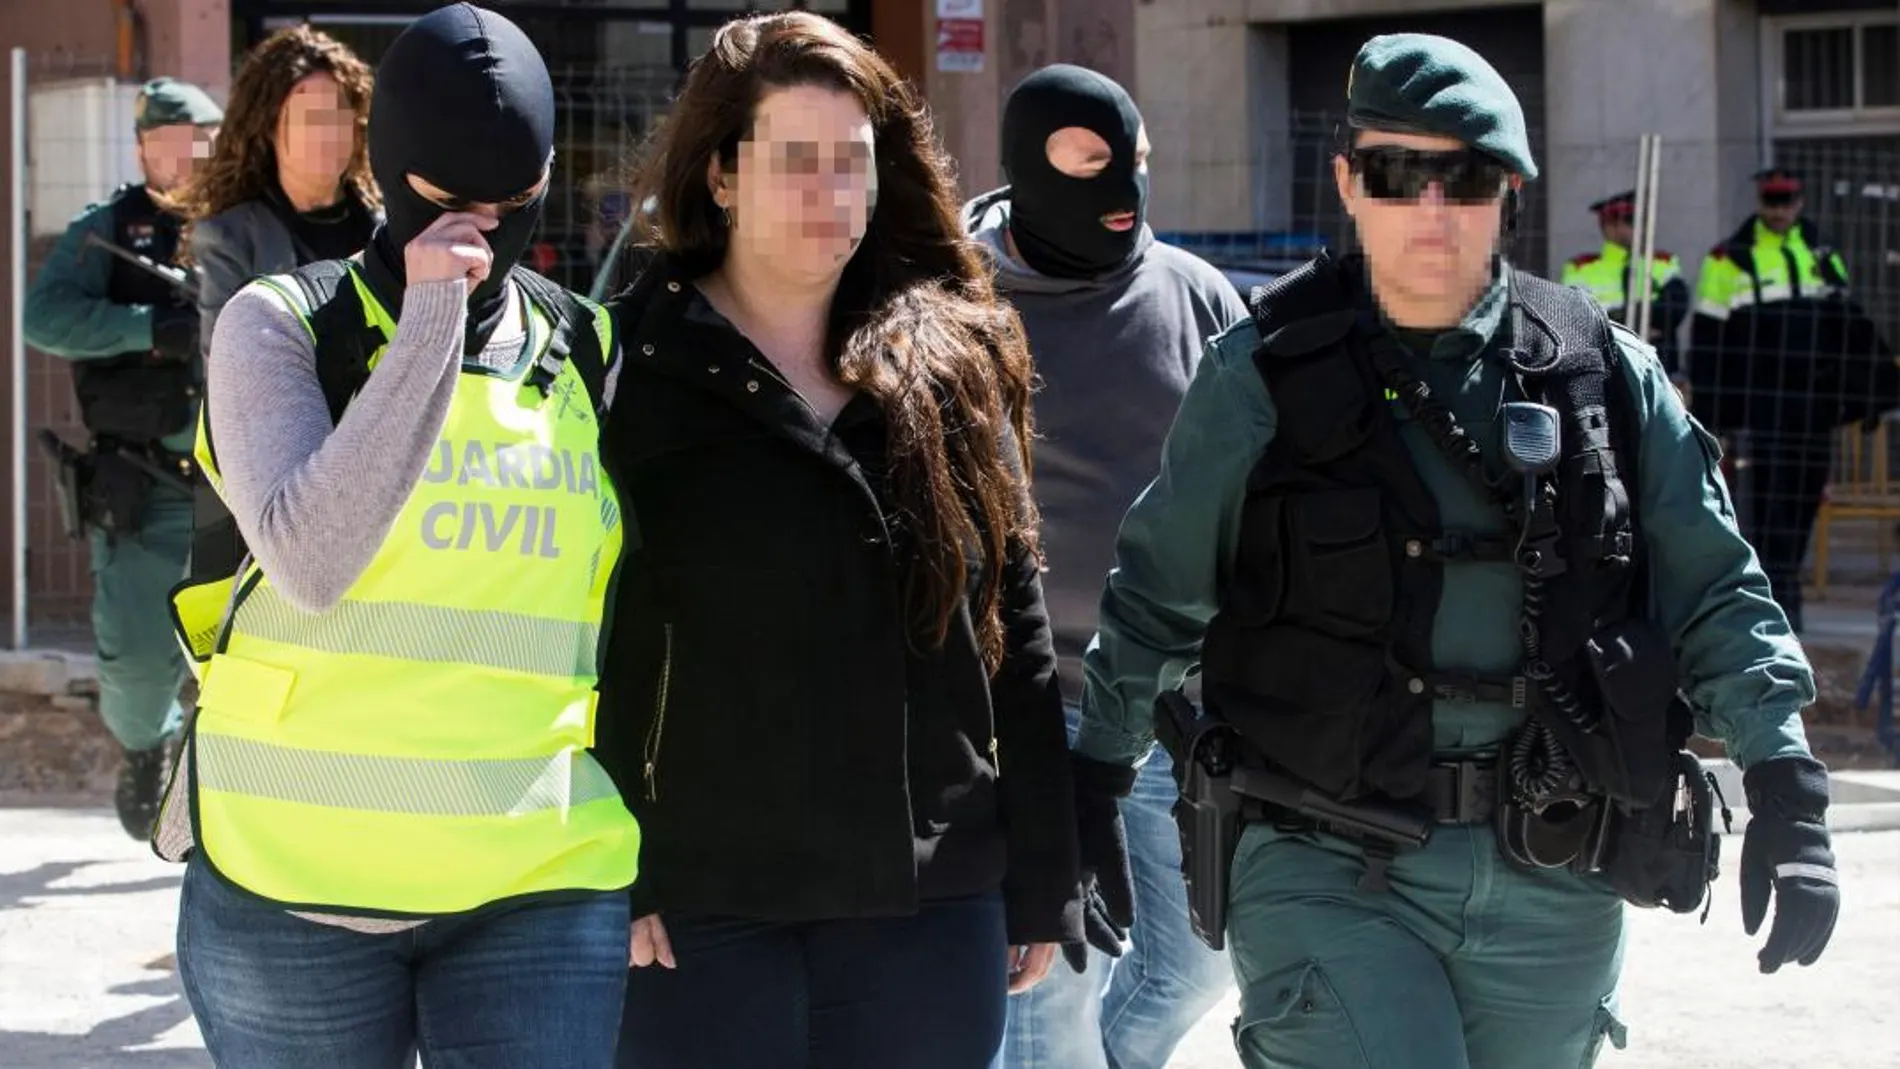 Tamara Carrasco el día de su detención por coordinar los costes de carreteras y sabotajes